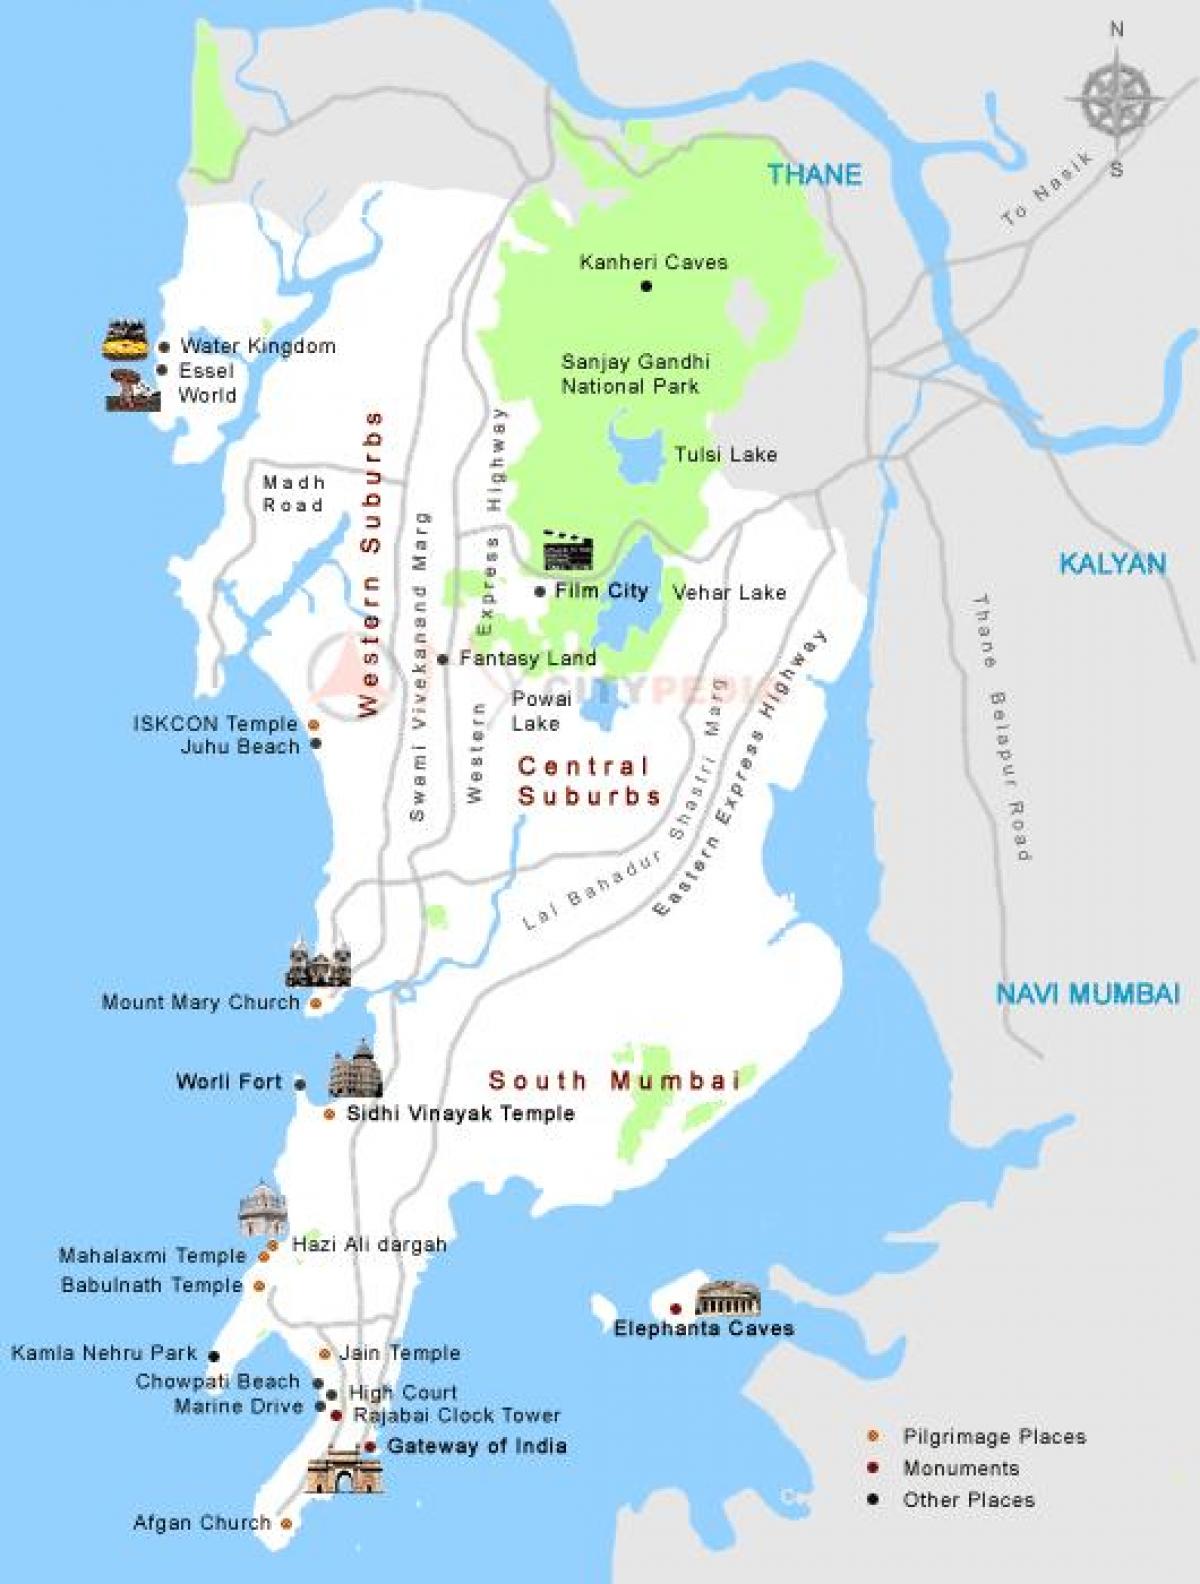 Mumbai darshan llocs mapa